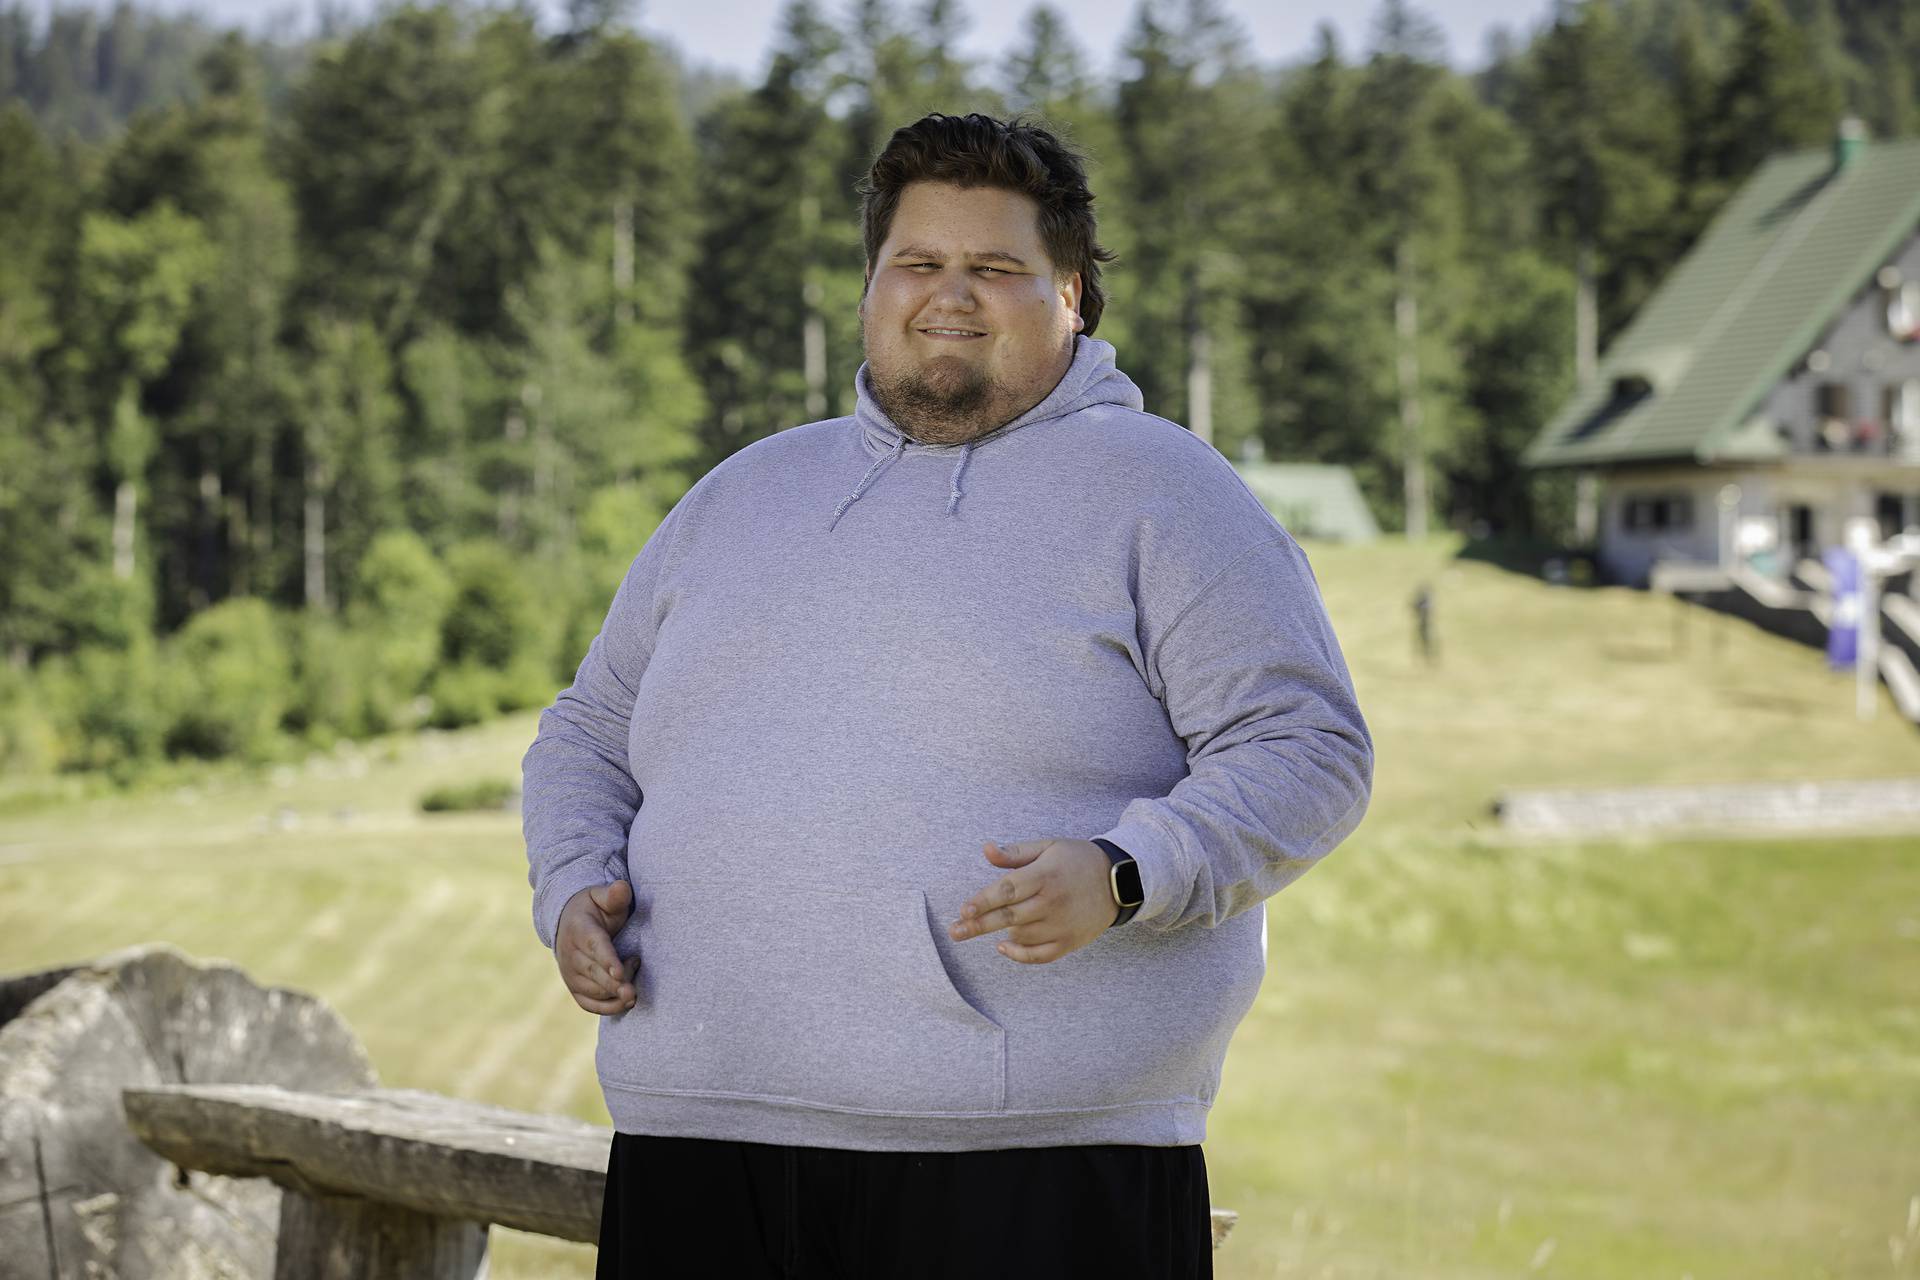 Filip je imao 235 kg, a cilj mu je doći ispod 100 kg: Treniram šest puta tjedno. Sad ne odustajem!